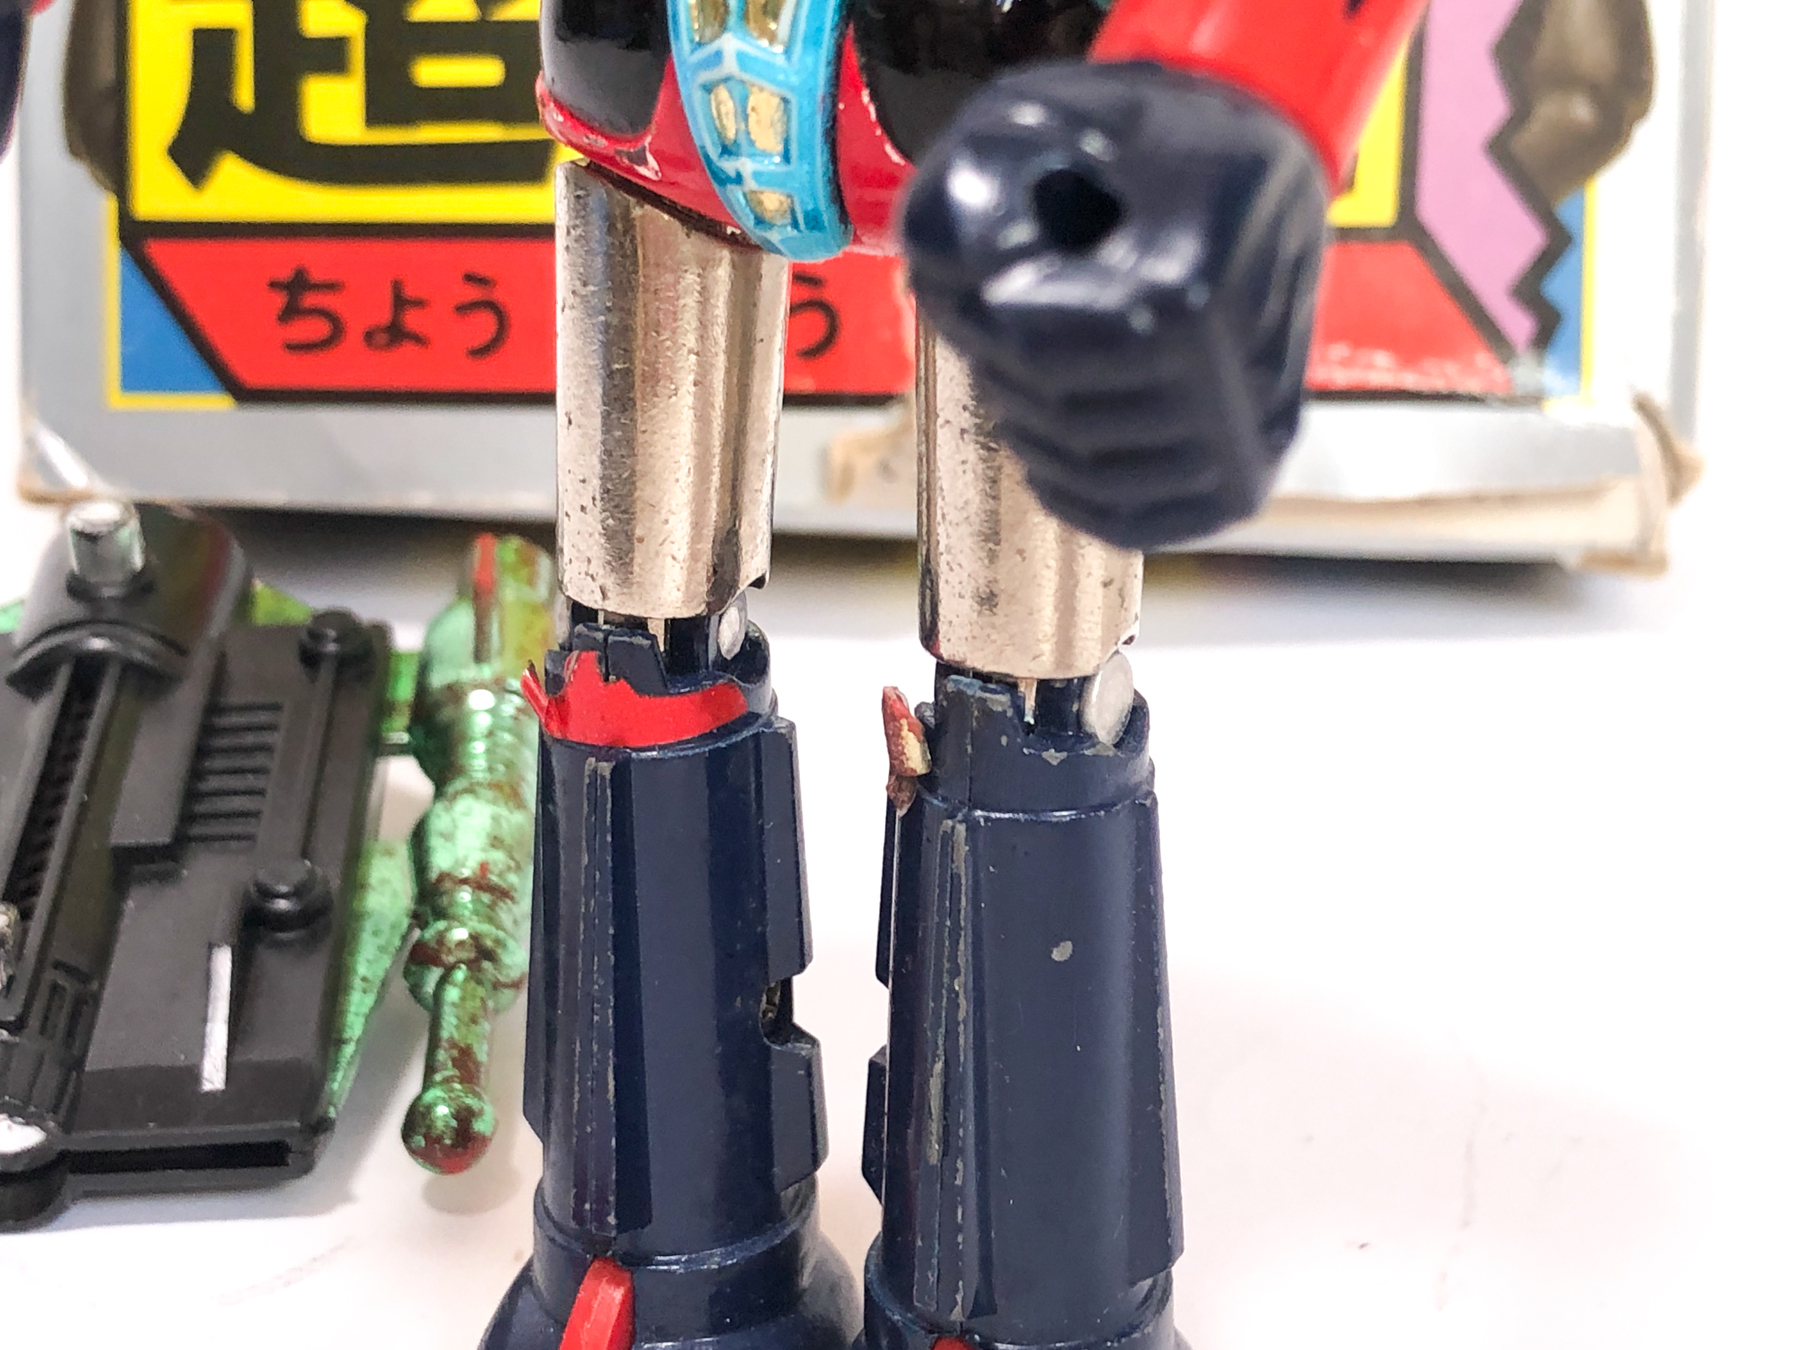 Ancien robot Grendizer en métal et pvc plastique articulé avec missiles ou  pièces détachables (style figurine Goldorak Popy Bandai Tomy Transformers  des années 1980s) jouet Vintage